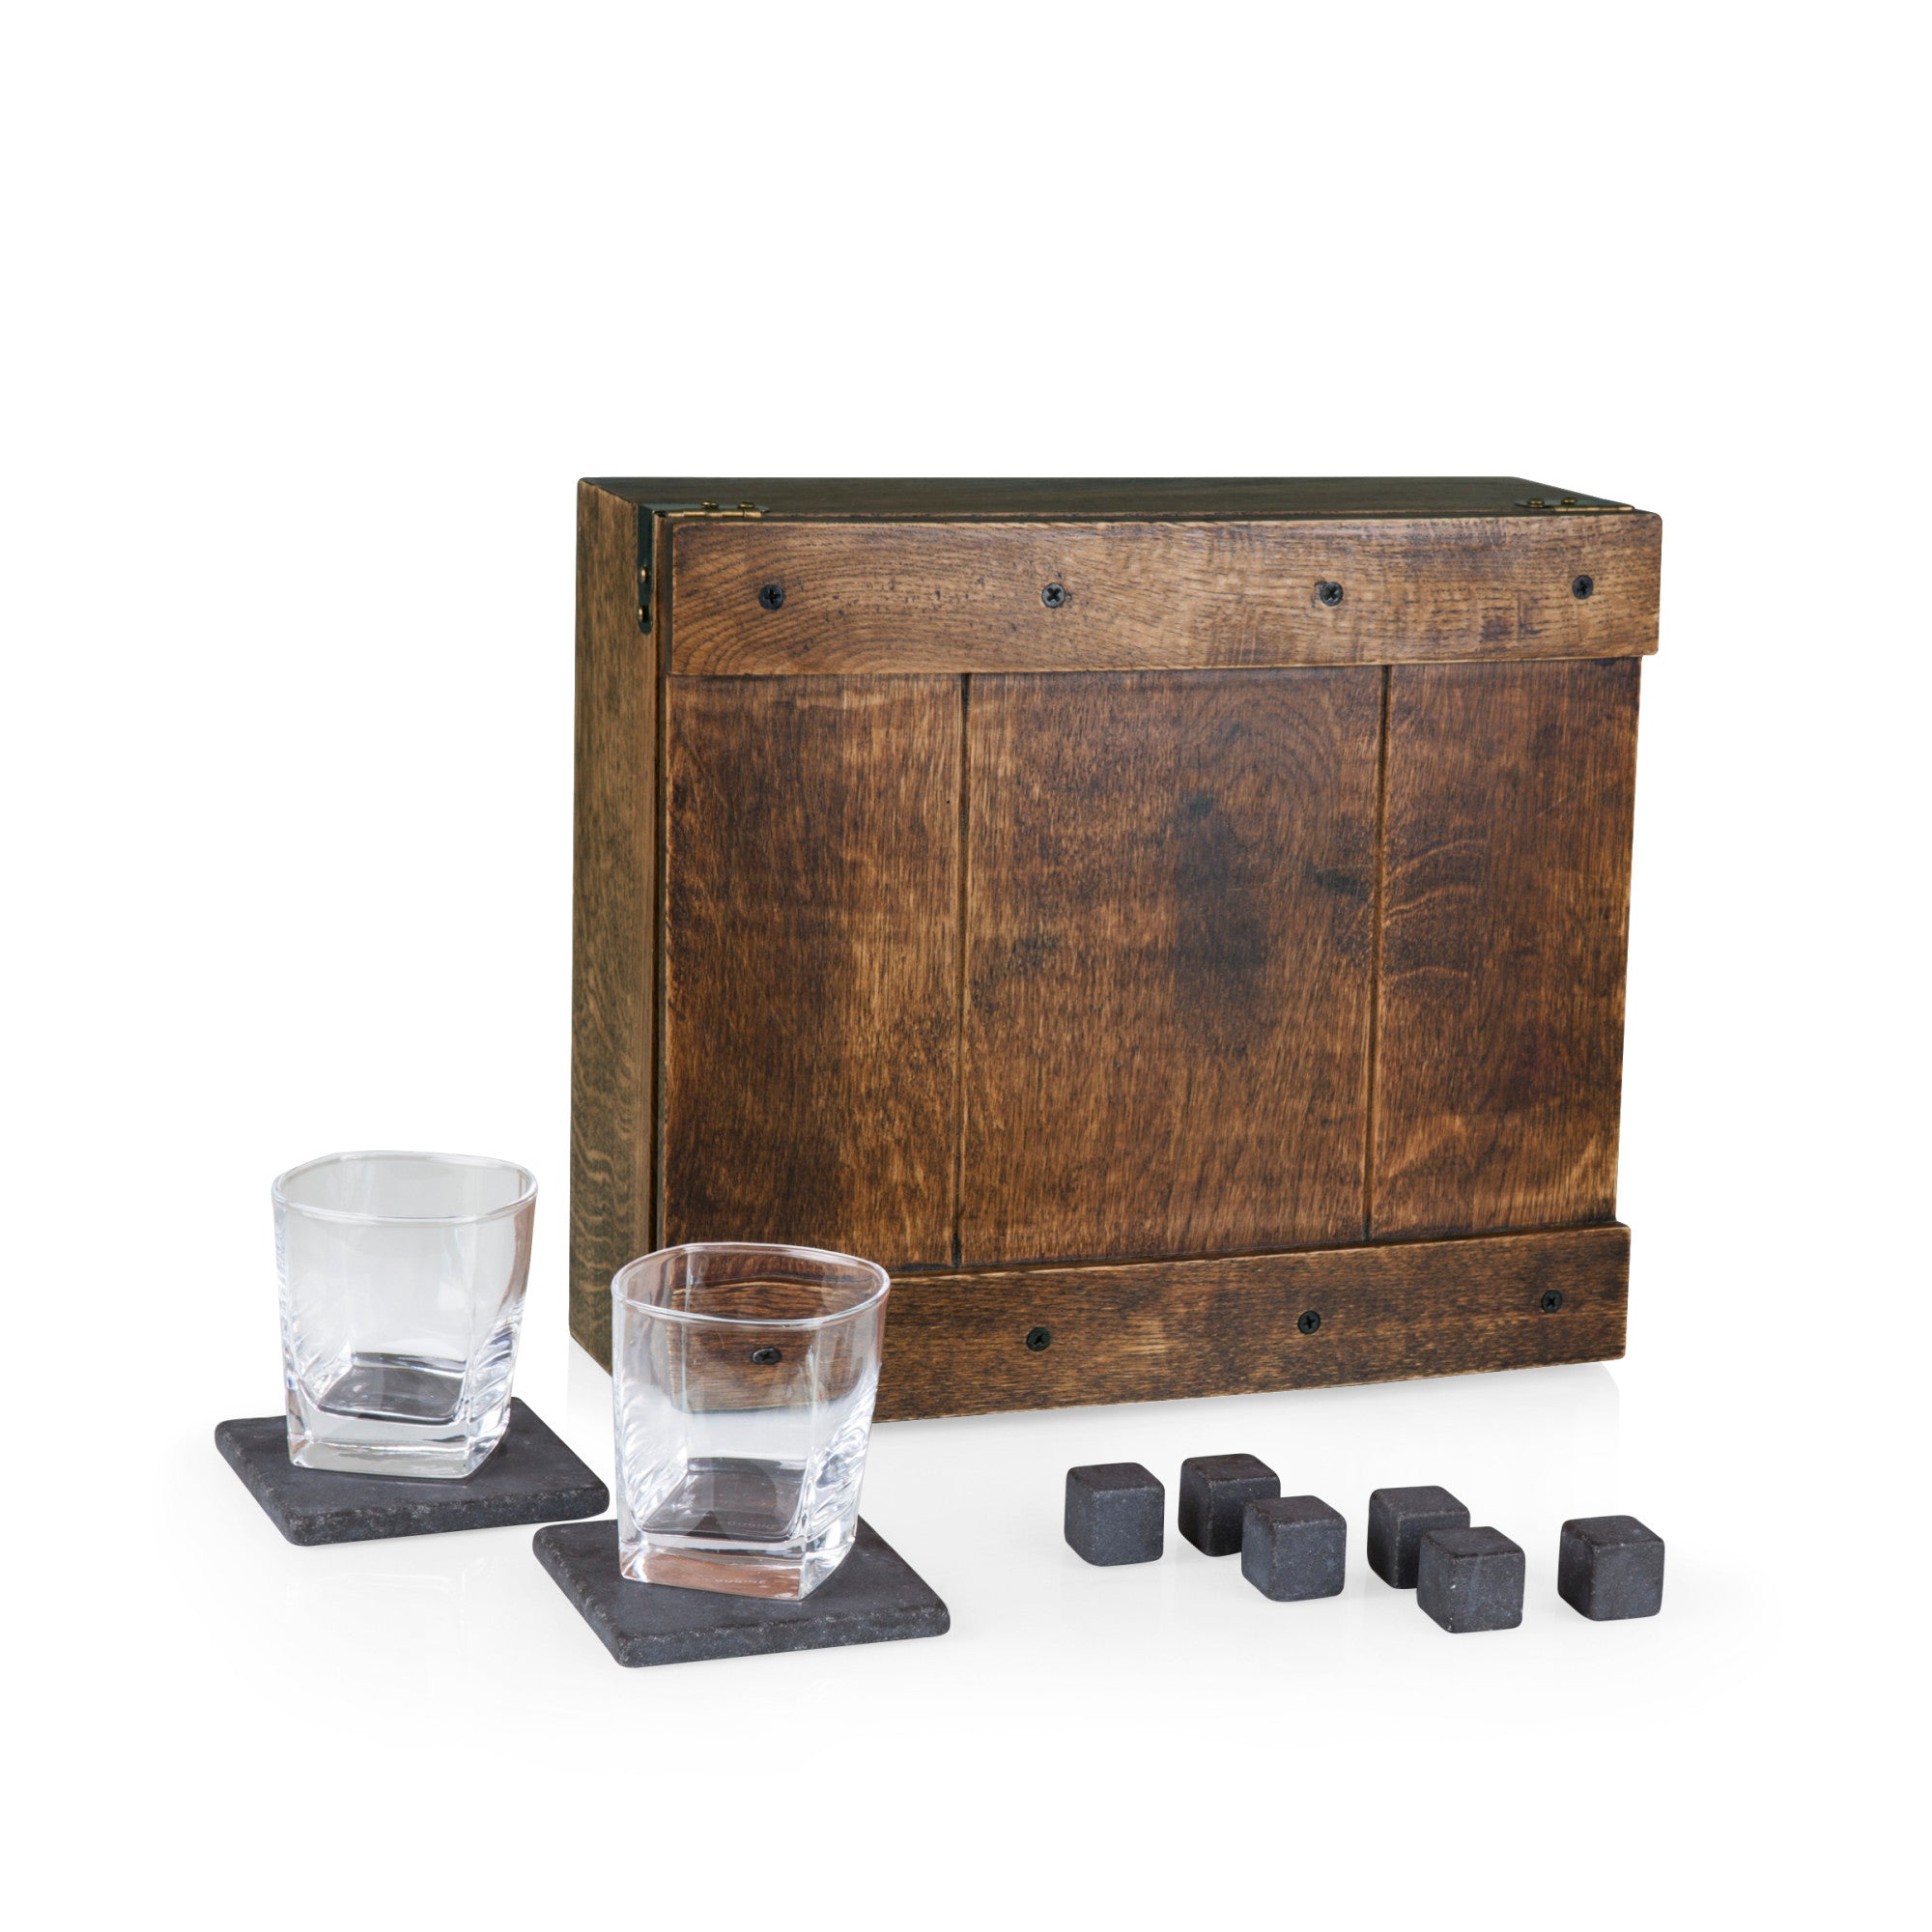 Baltimore Ravens - Whiskey Box Gift Set